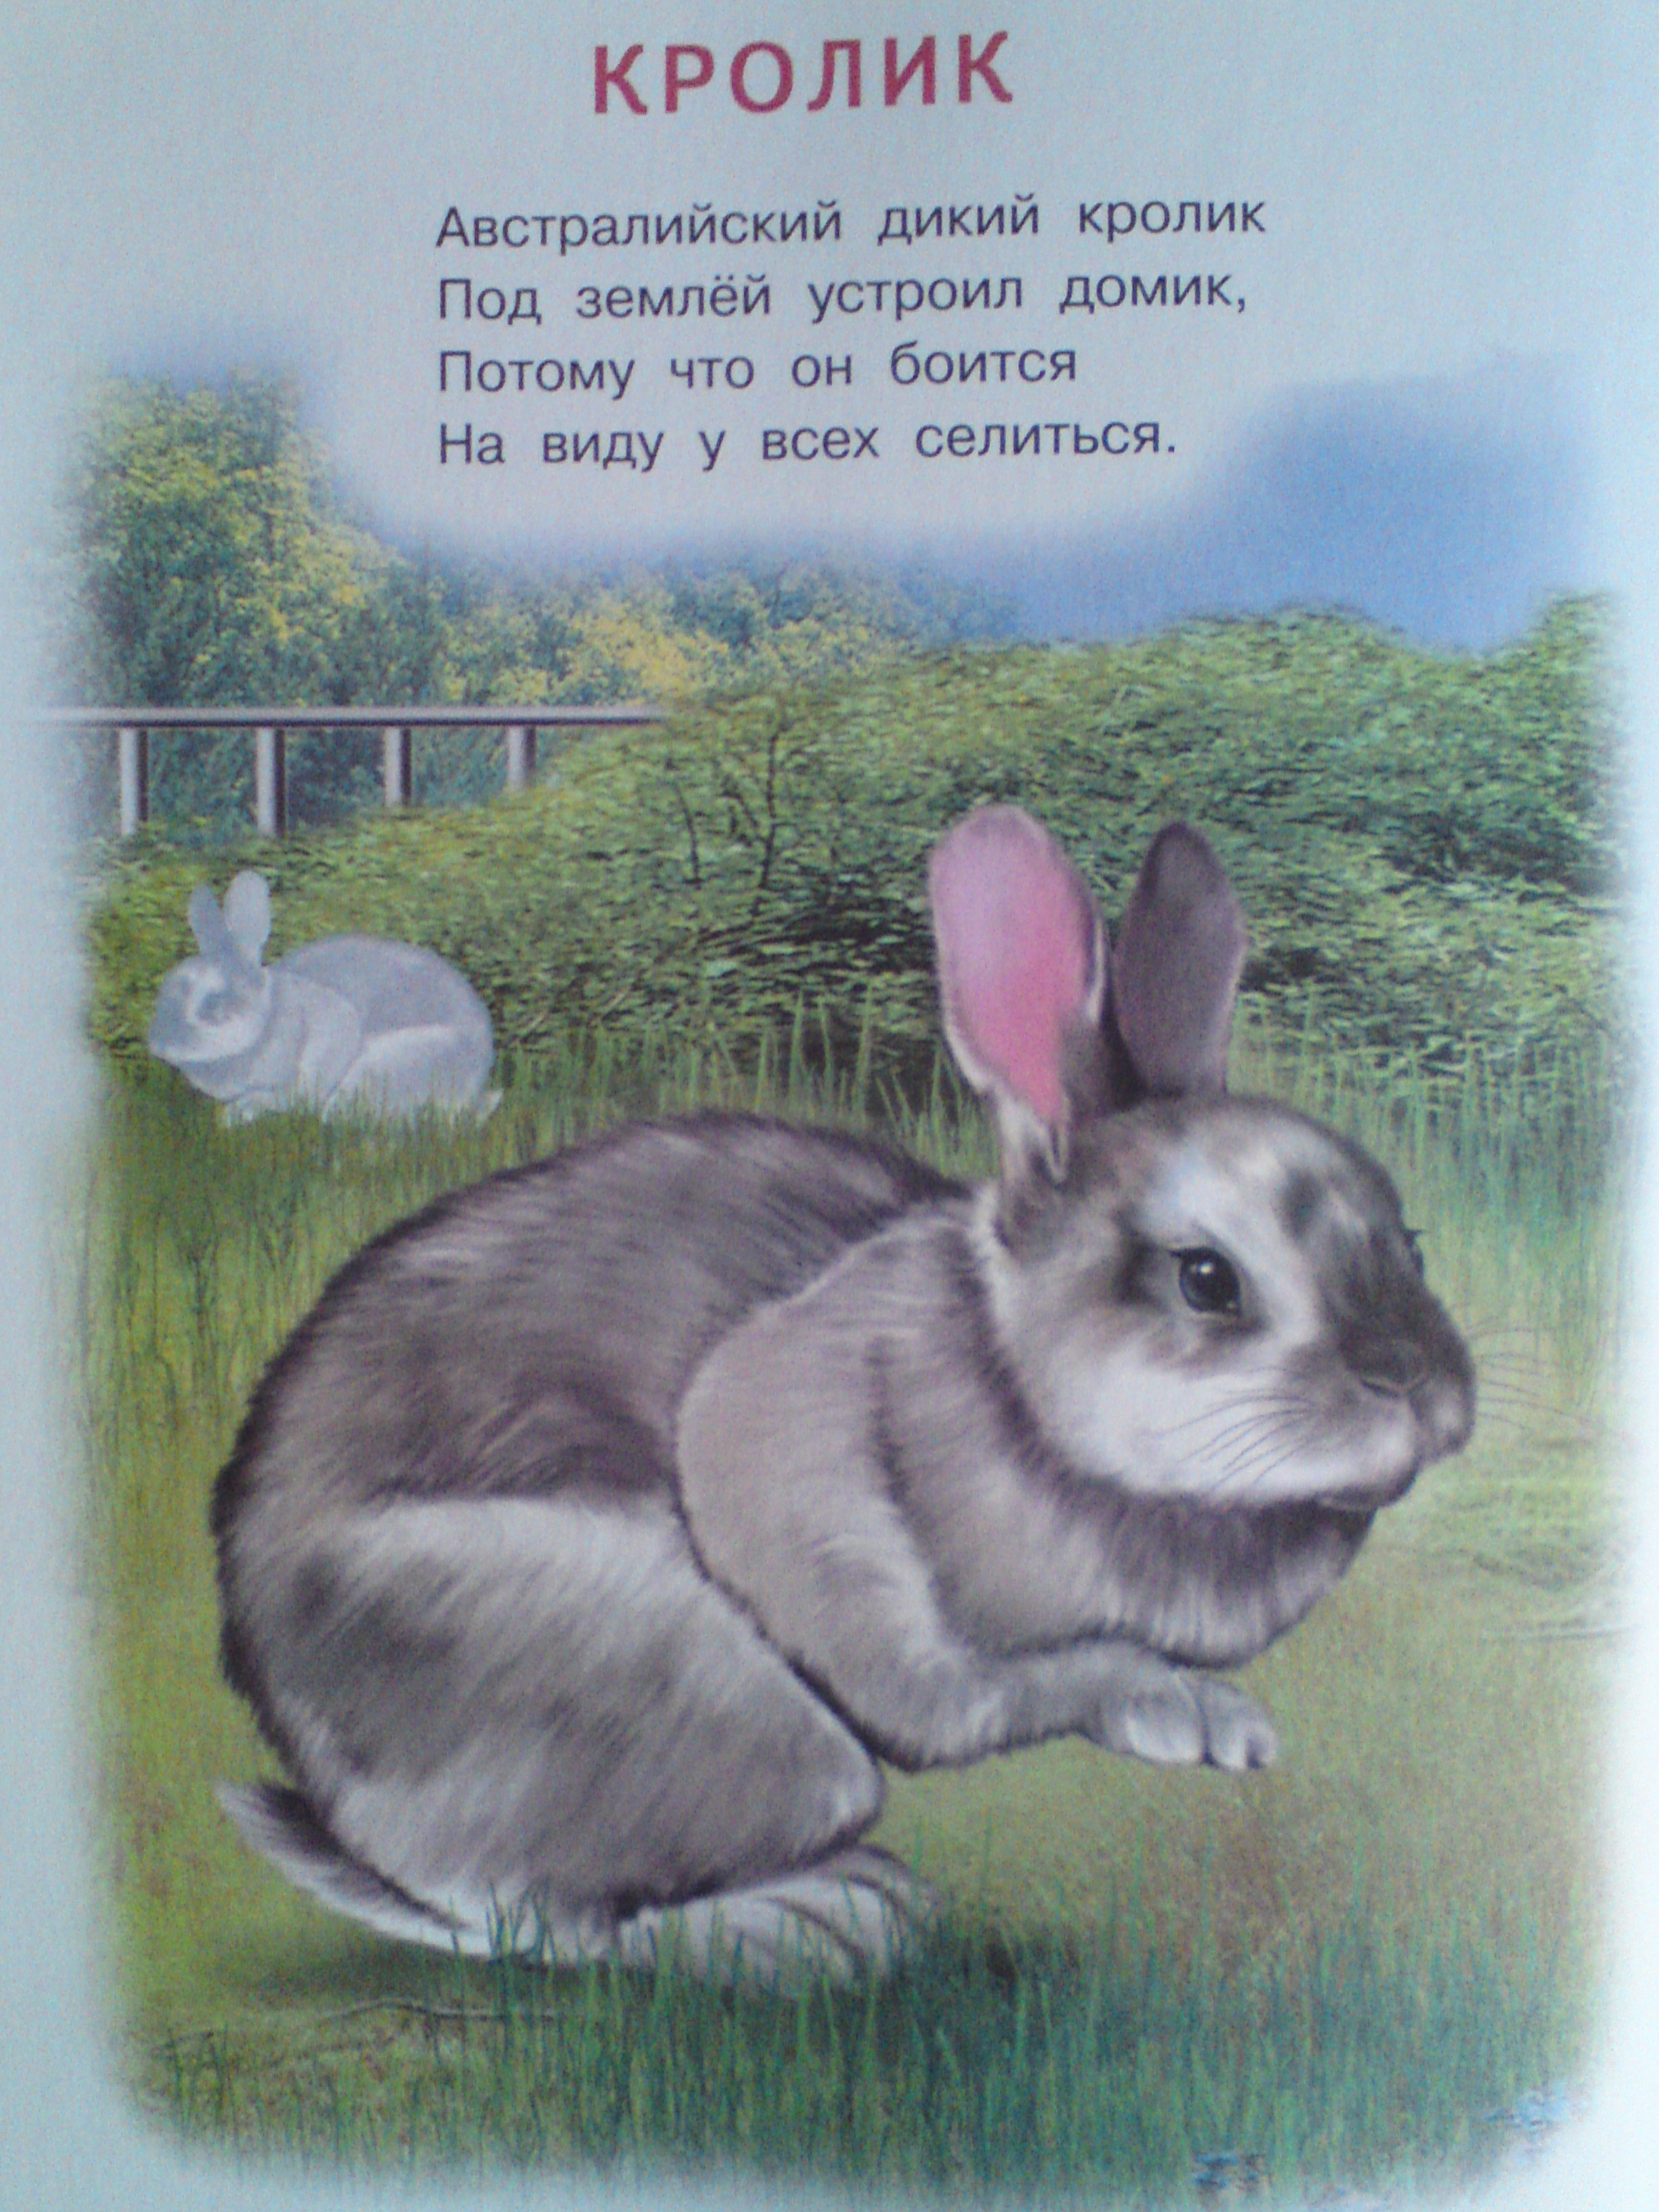 Кролик ребенку 4 лет. Стих про кролика. Стих про кролика для детей. Детский стих про кролика. Детские стихи про кролика.